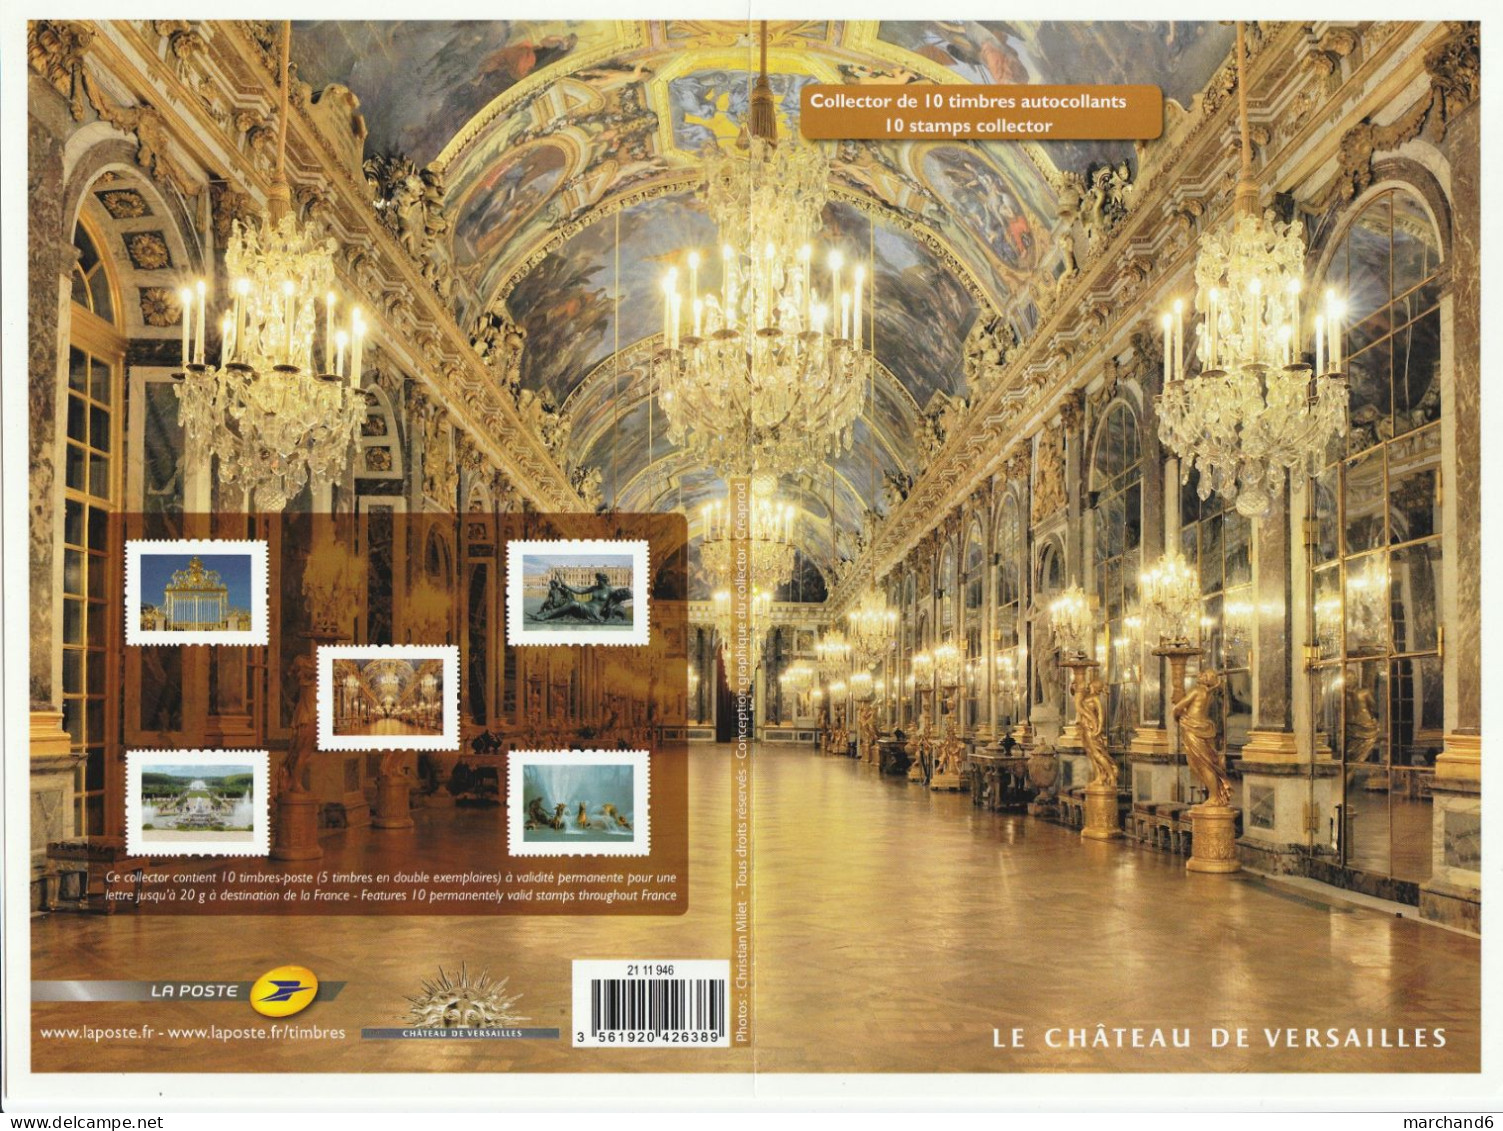 Feuillet Collector Le Chateau De Versailles France 2012 IDT L P 20gr 10 Timbres Autoadhésifs N°132 - Collectors